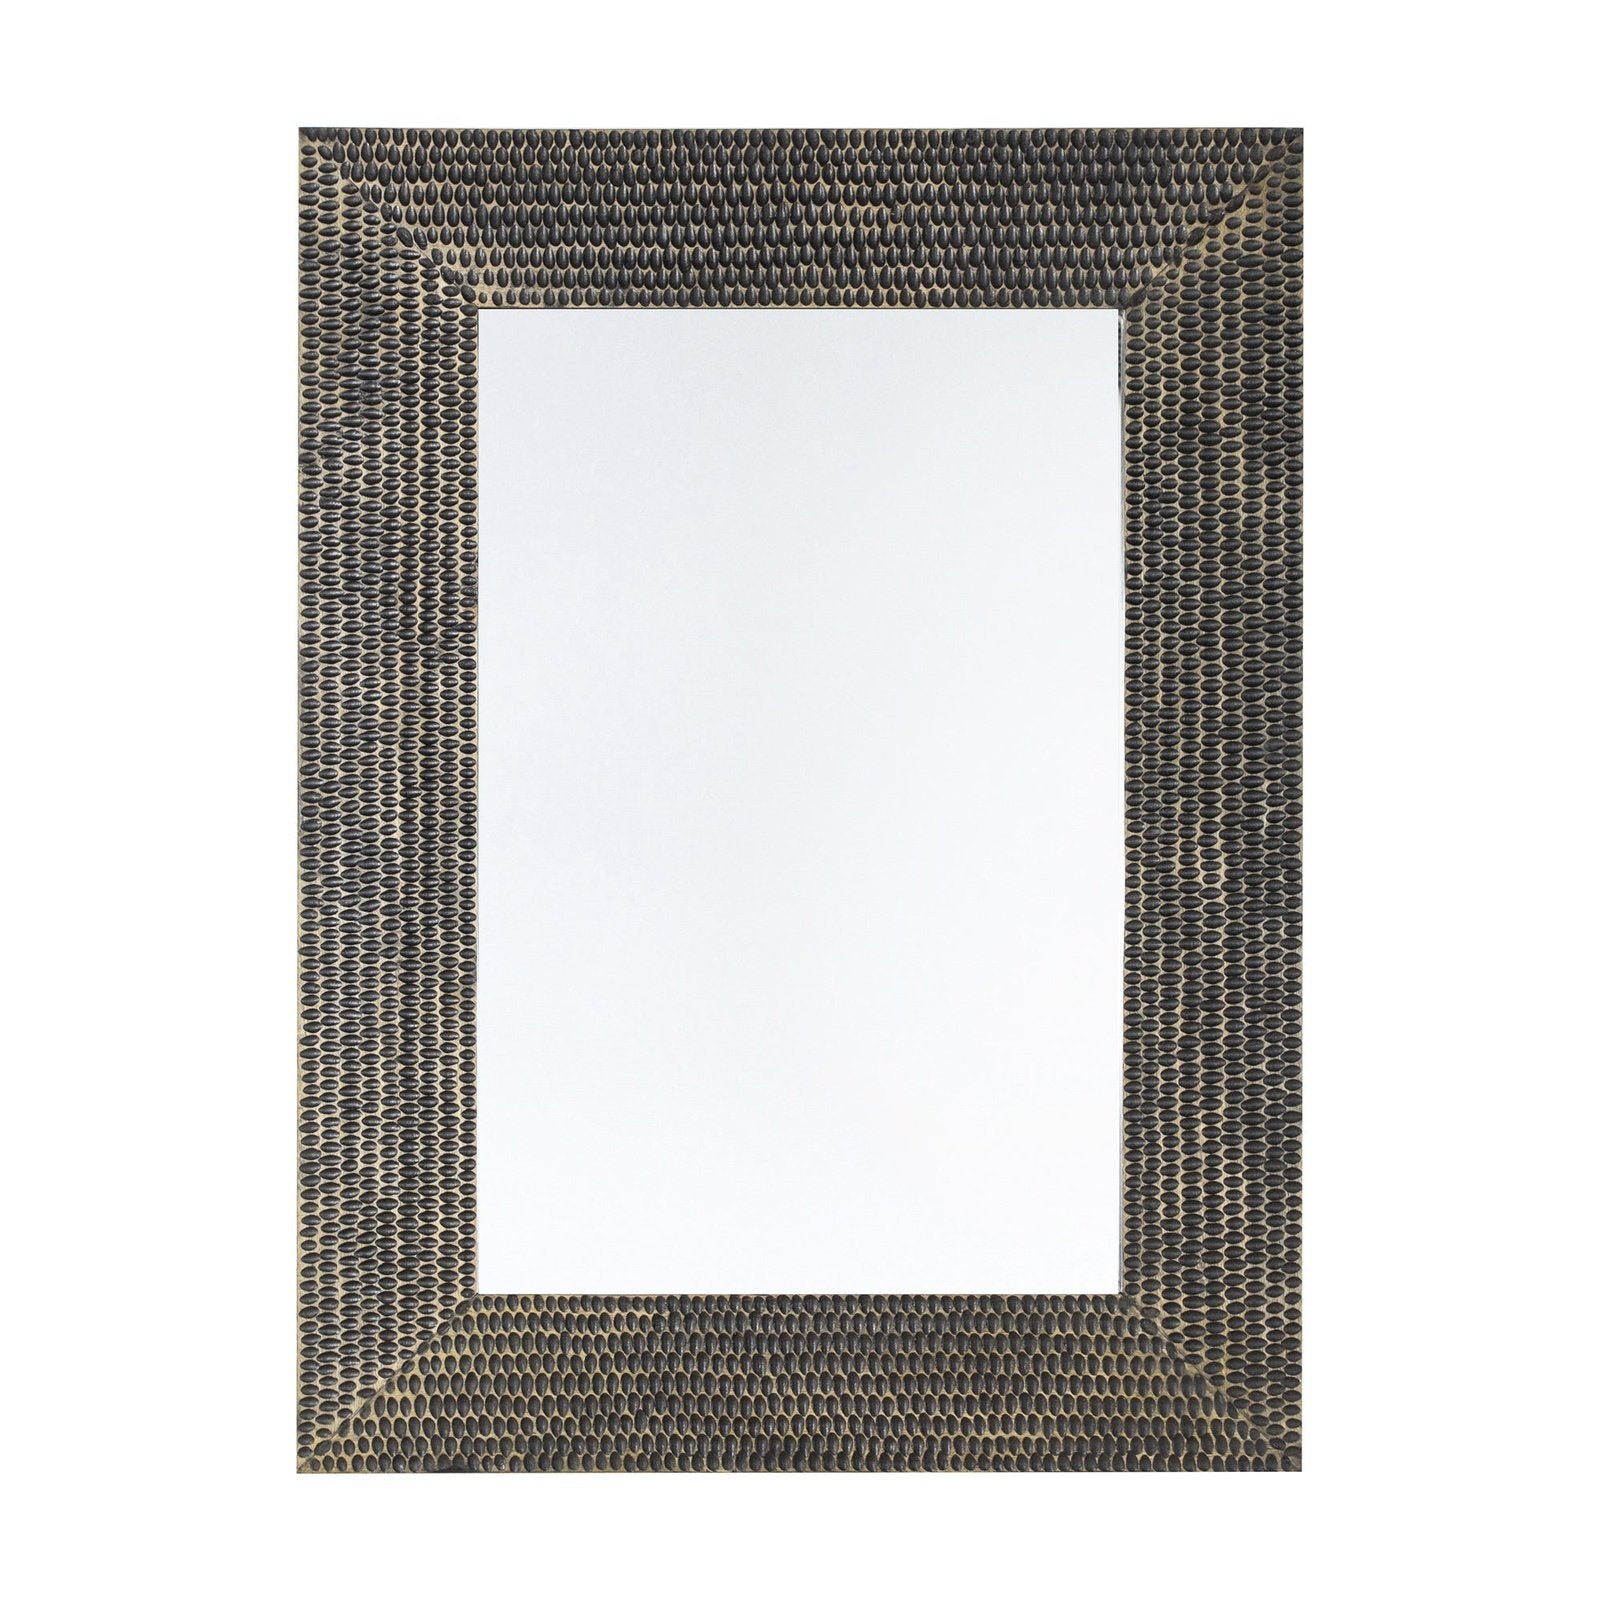 Mississippi Rectangular Carved Mirror - Deep Mango Wood Frame - Hand-Carved Detailing